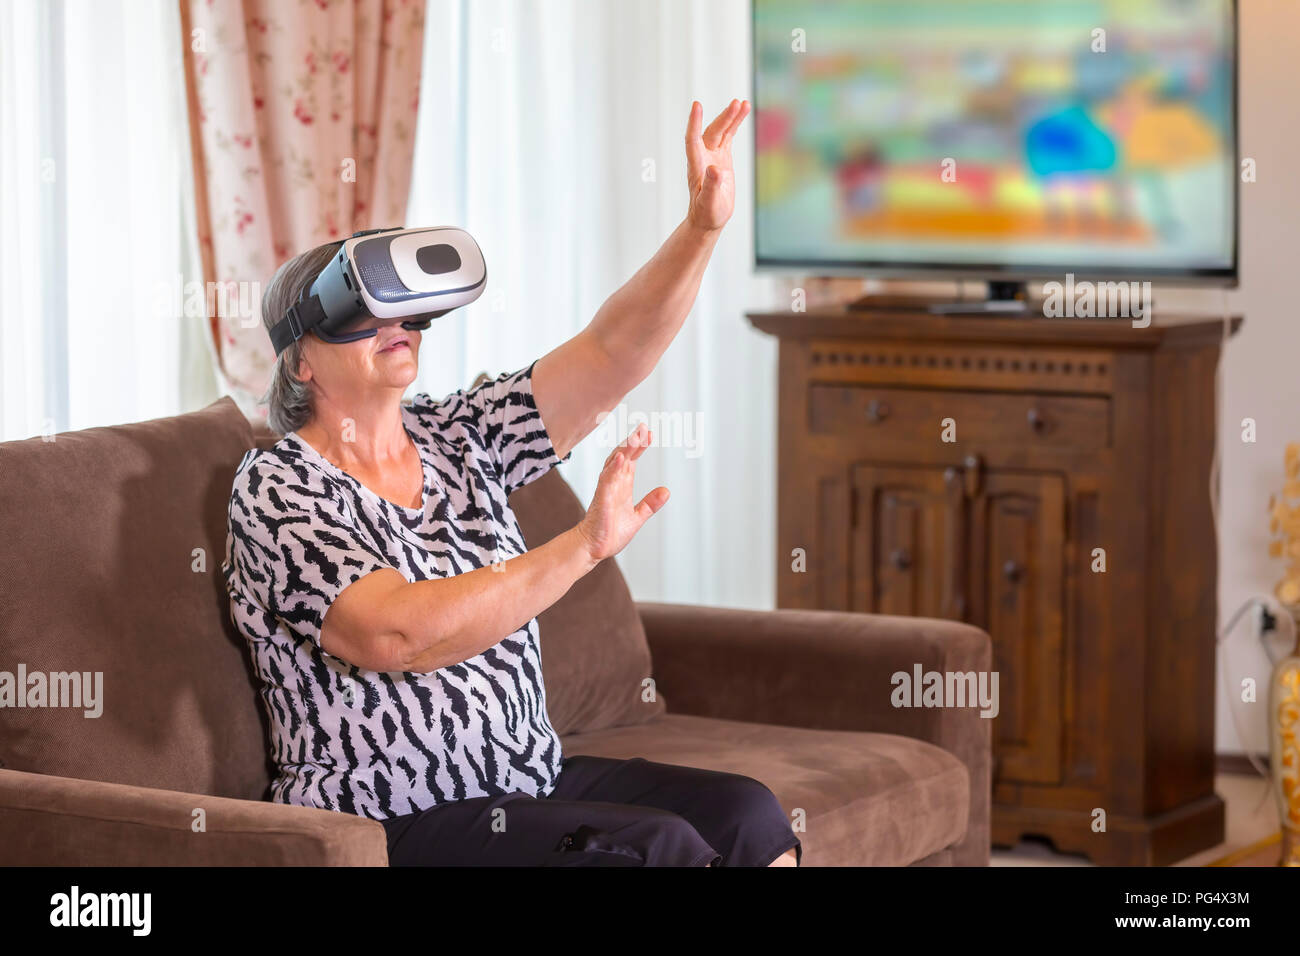 Ältere Frau mit virtuellen Headset oder die 3D-Brille Videospiel zu Hause spielt. Technologie, Augmented Reality, Unterhaltung und Personen Konzept. Fokus auf h Stockfoto